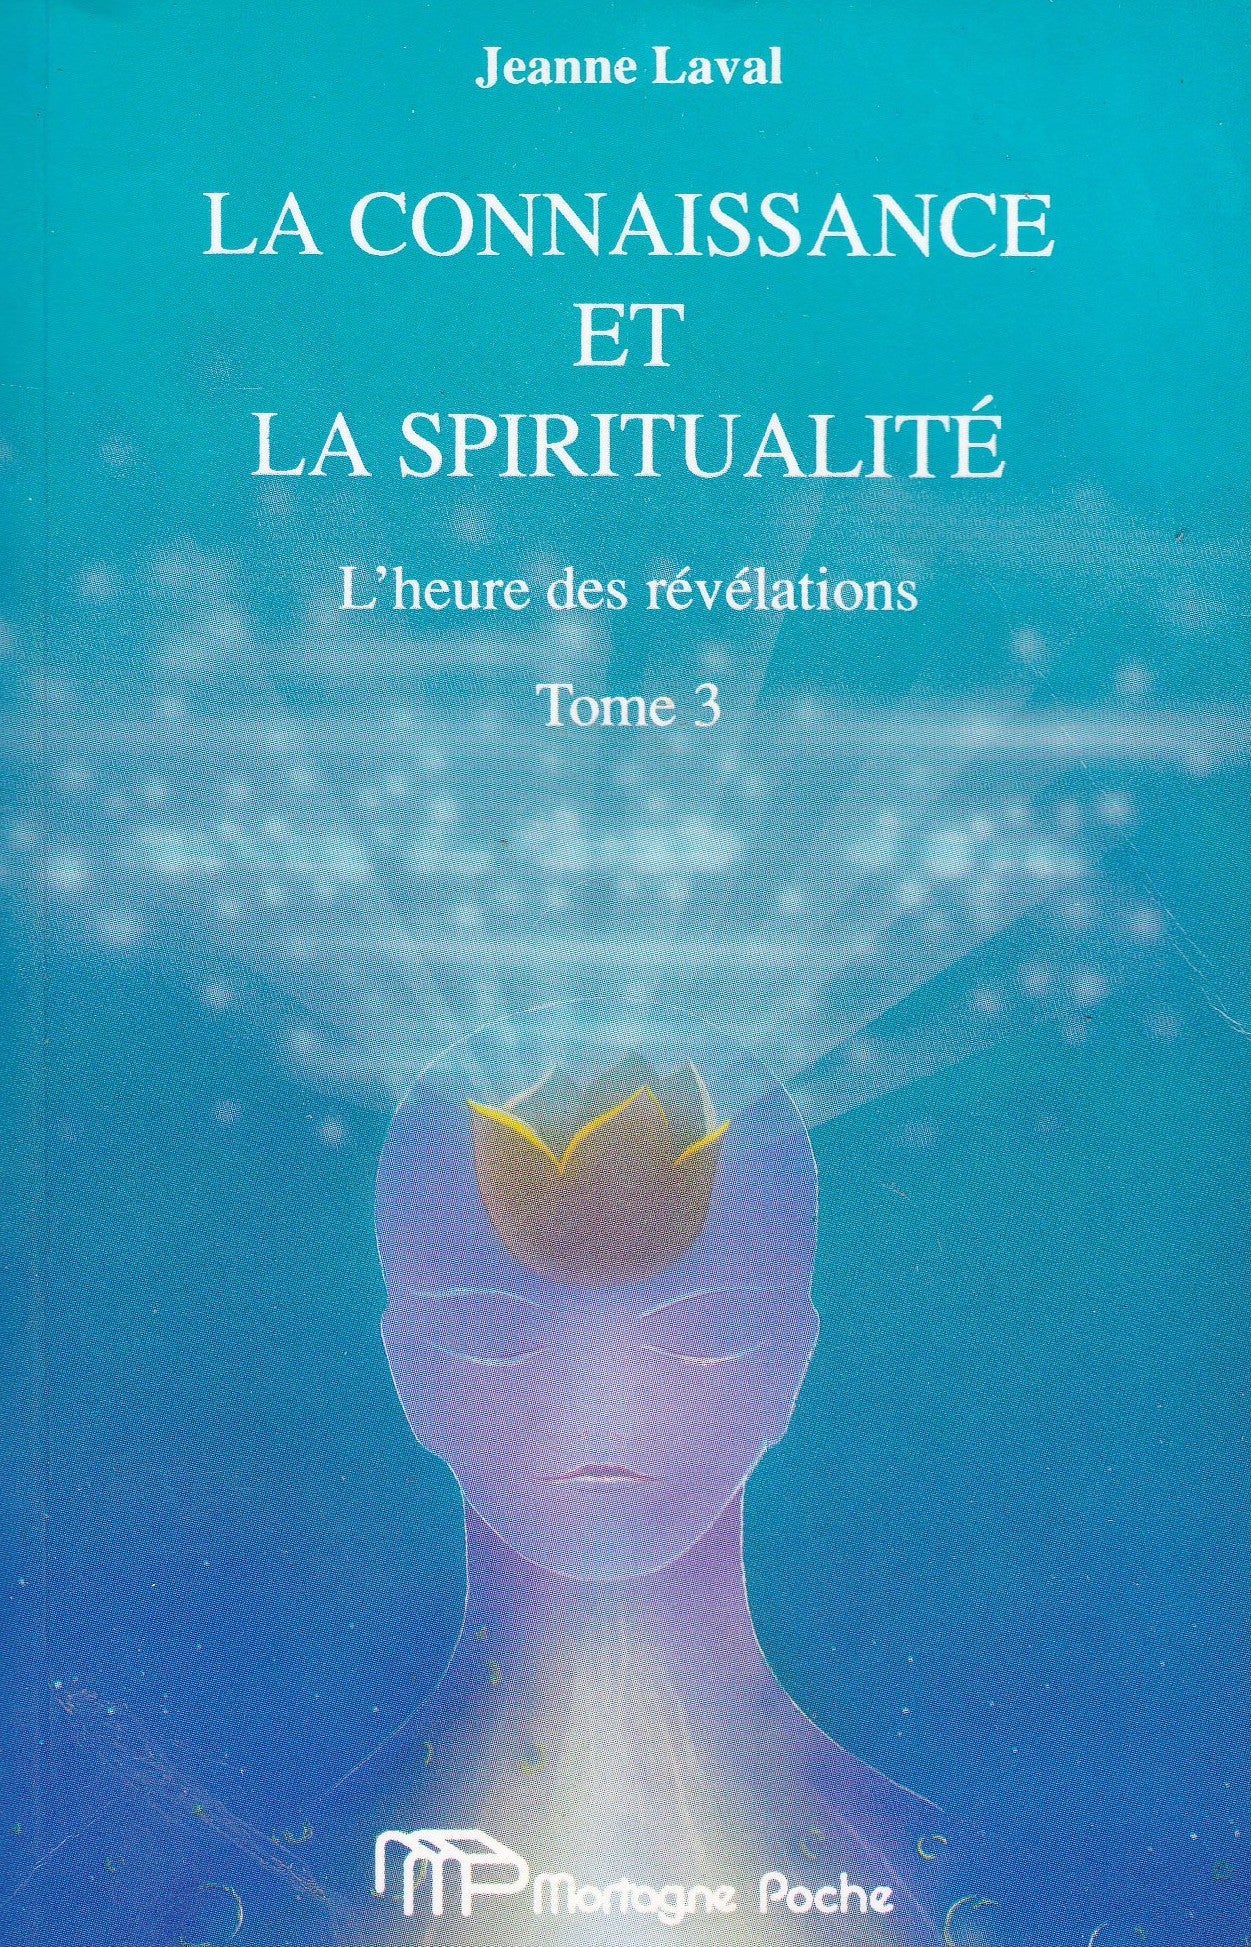 Livre ISBN 2890745279 La connaissance et la spiritualité # 3 : L'heure des révélations (Jeanne Laval)